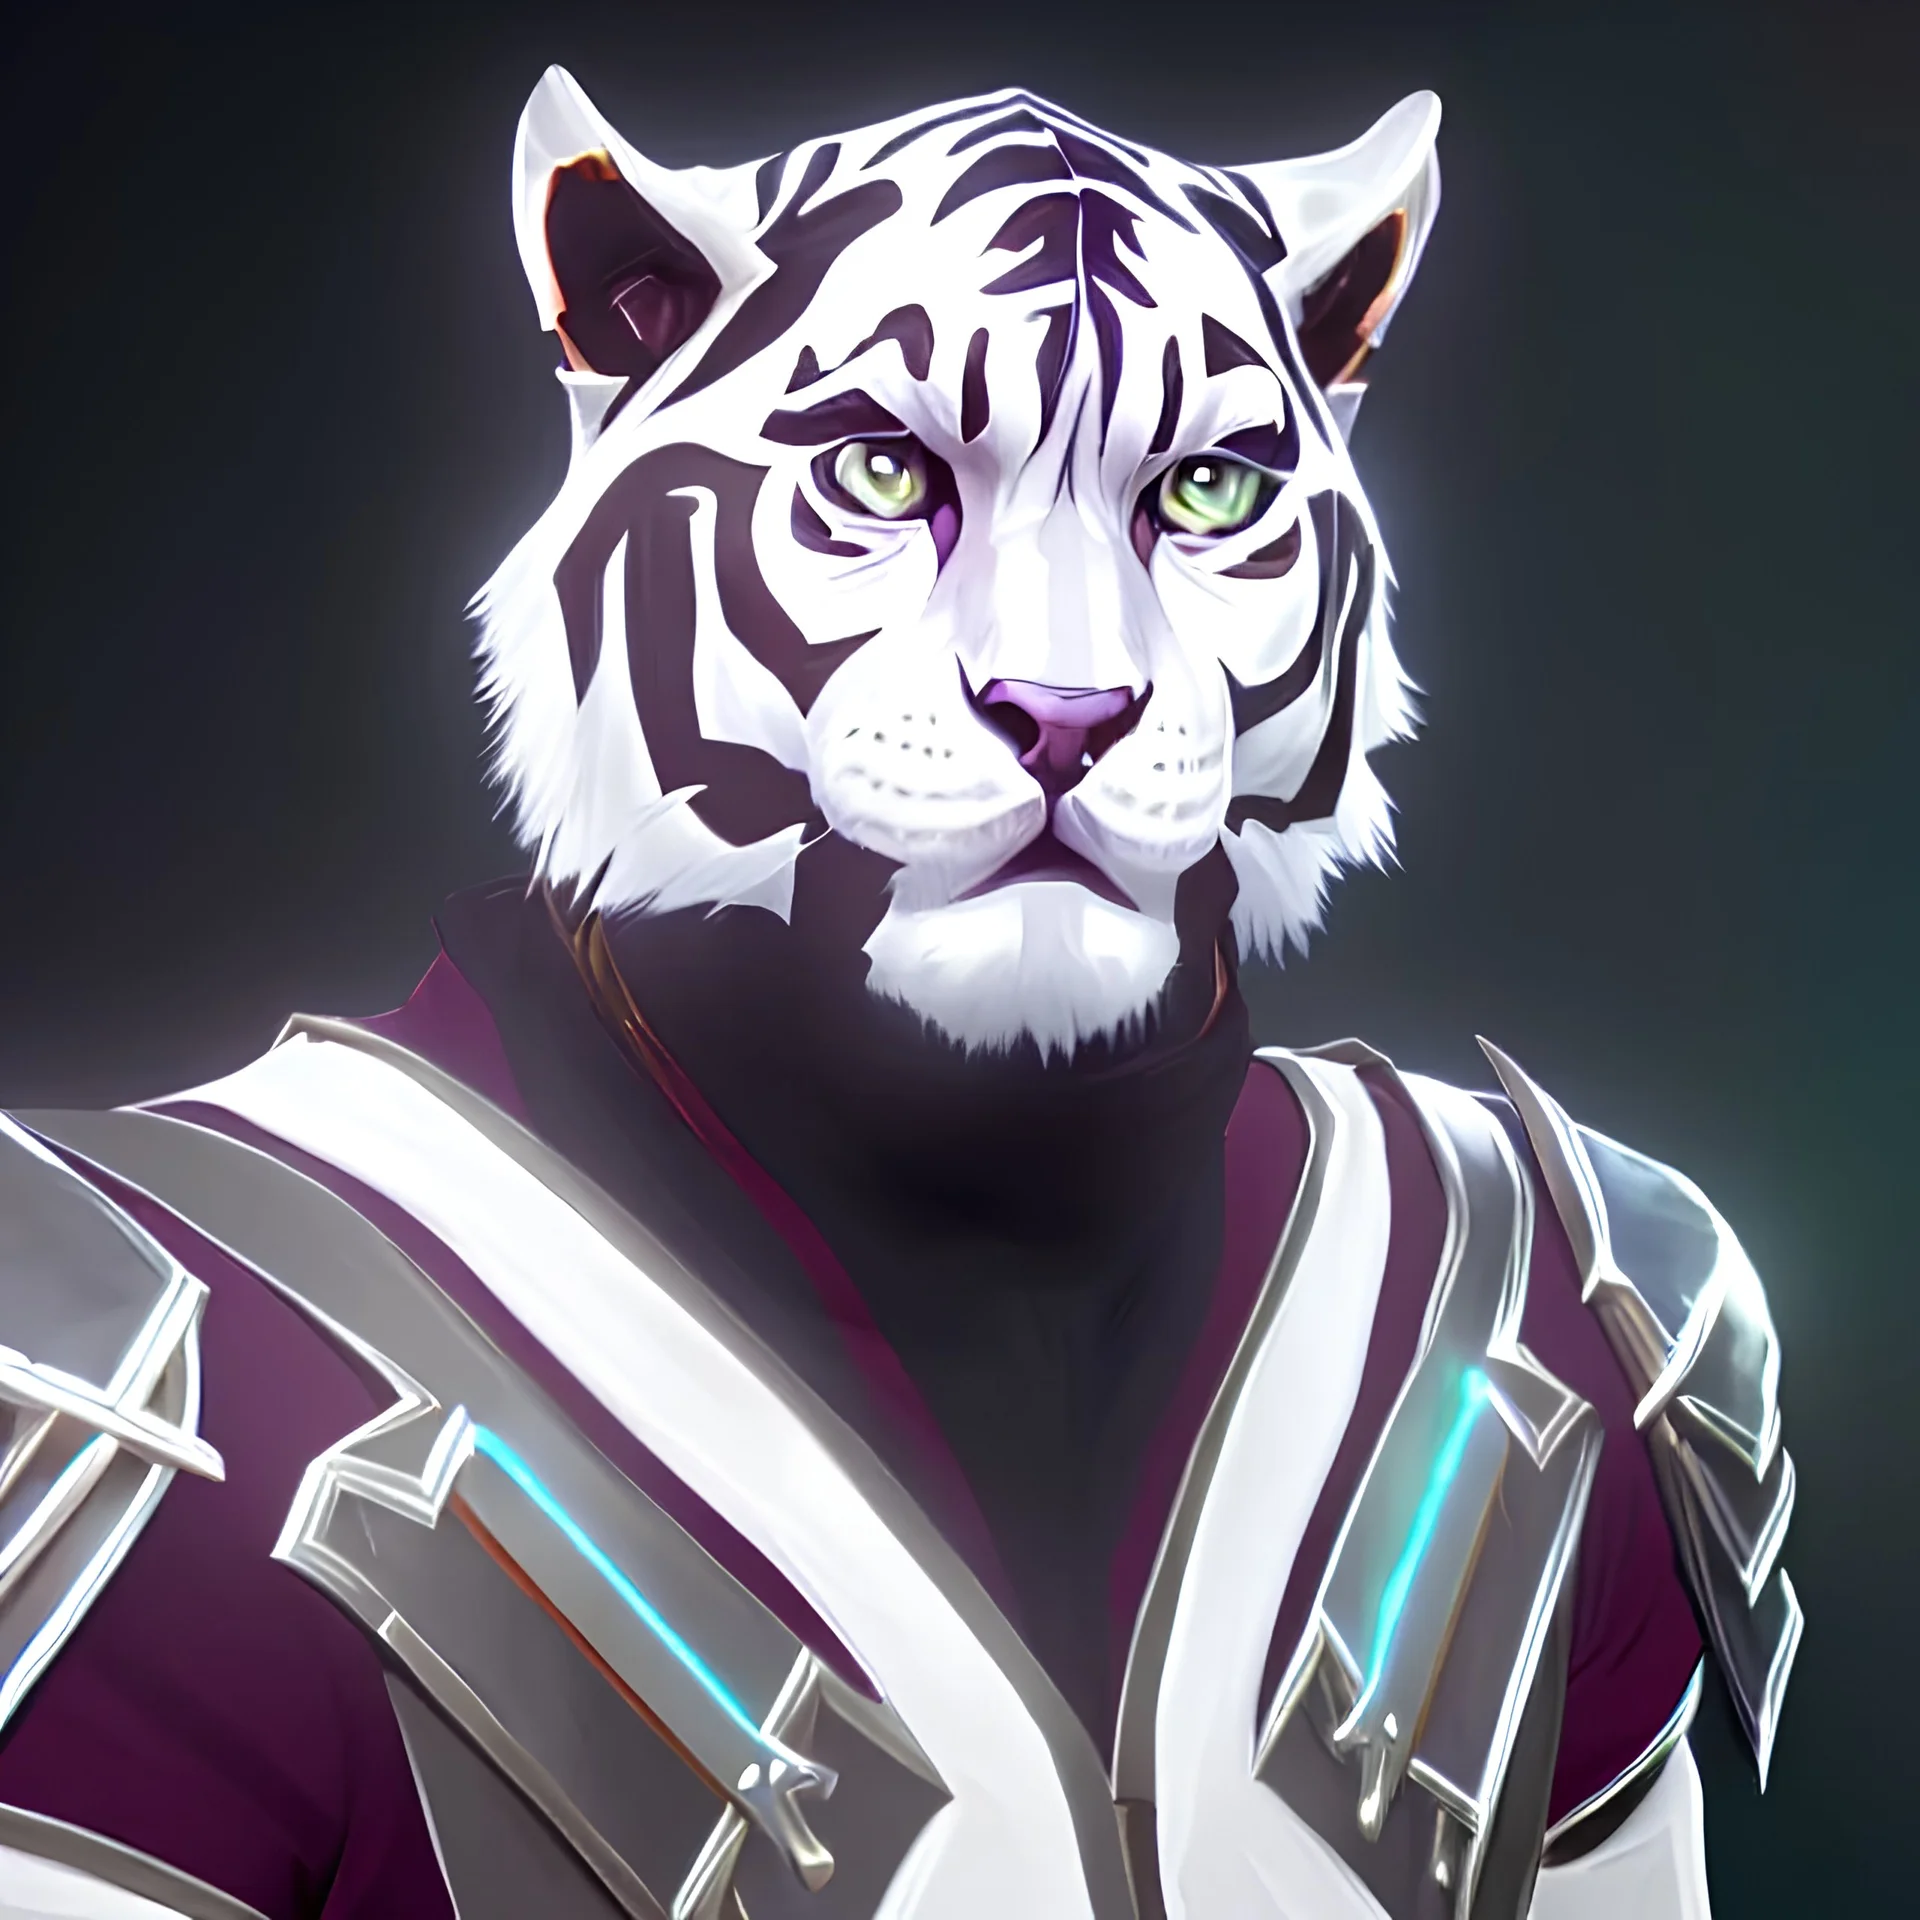 Tigre bianca che indossa un armatura d'argento con in mano una sciabola, colore vivace di sembianze umanoidi